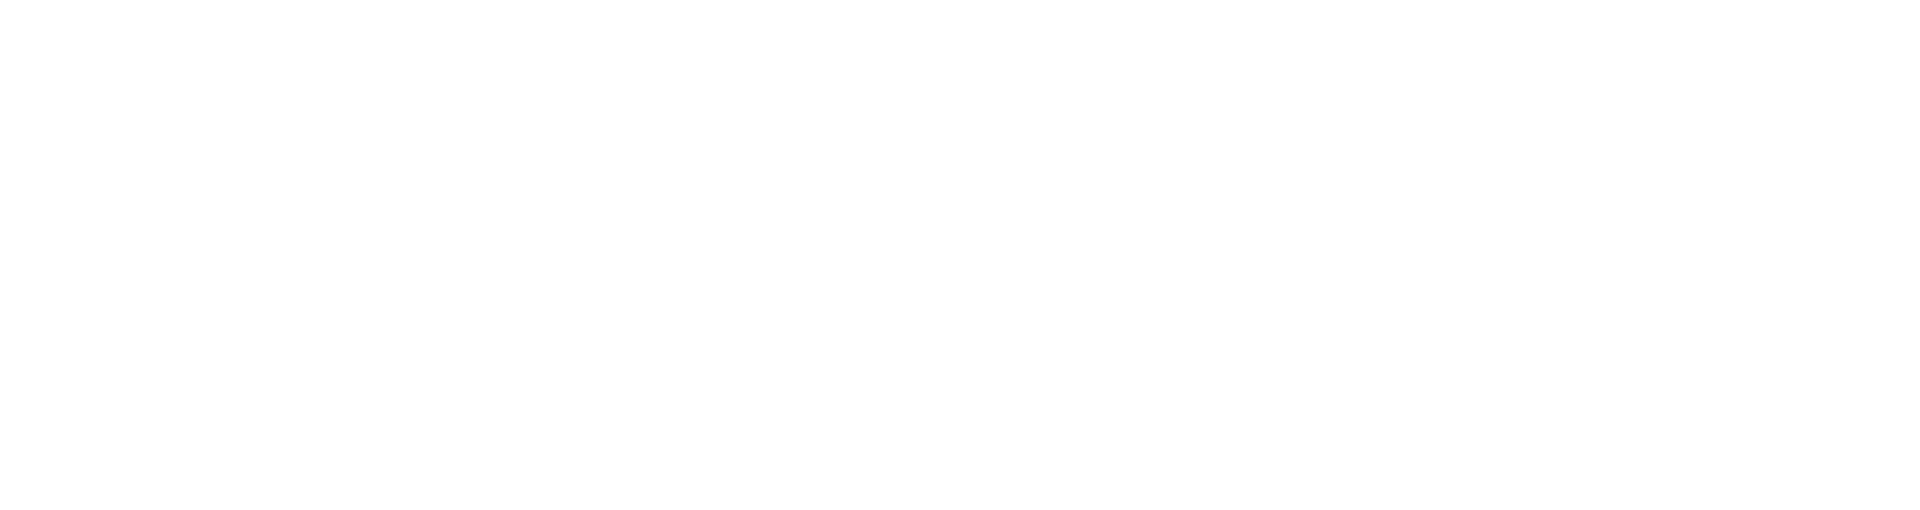 jemma pizza logo